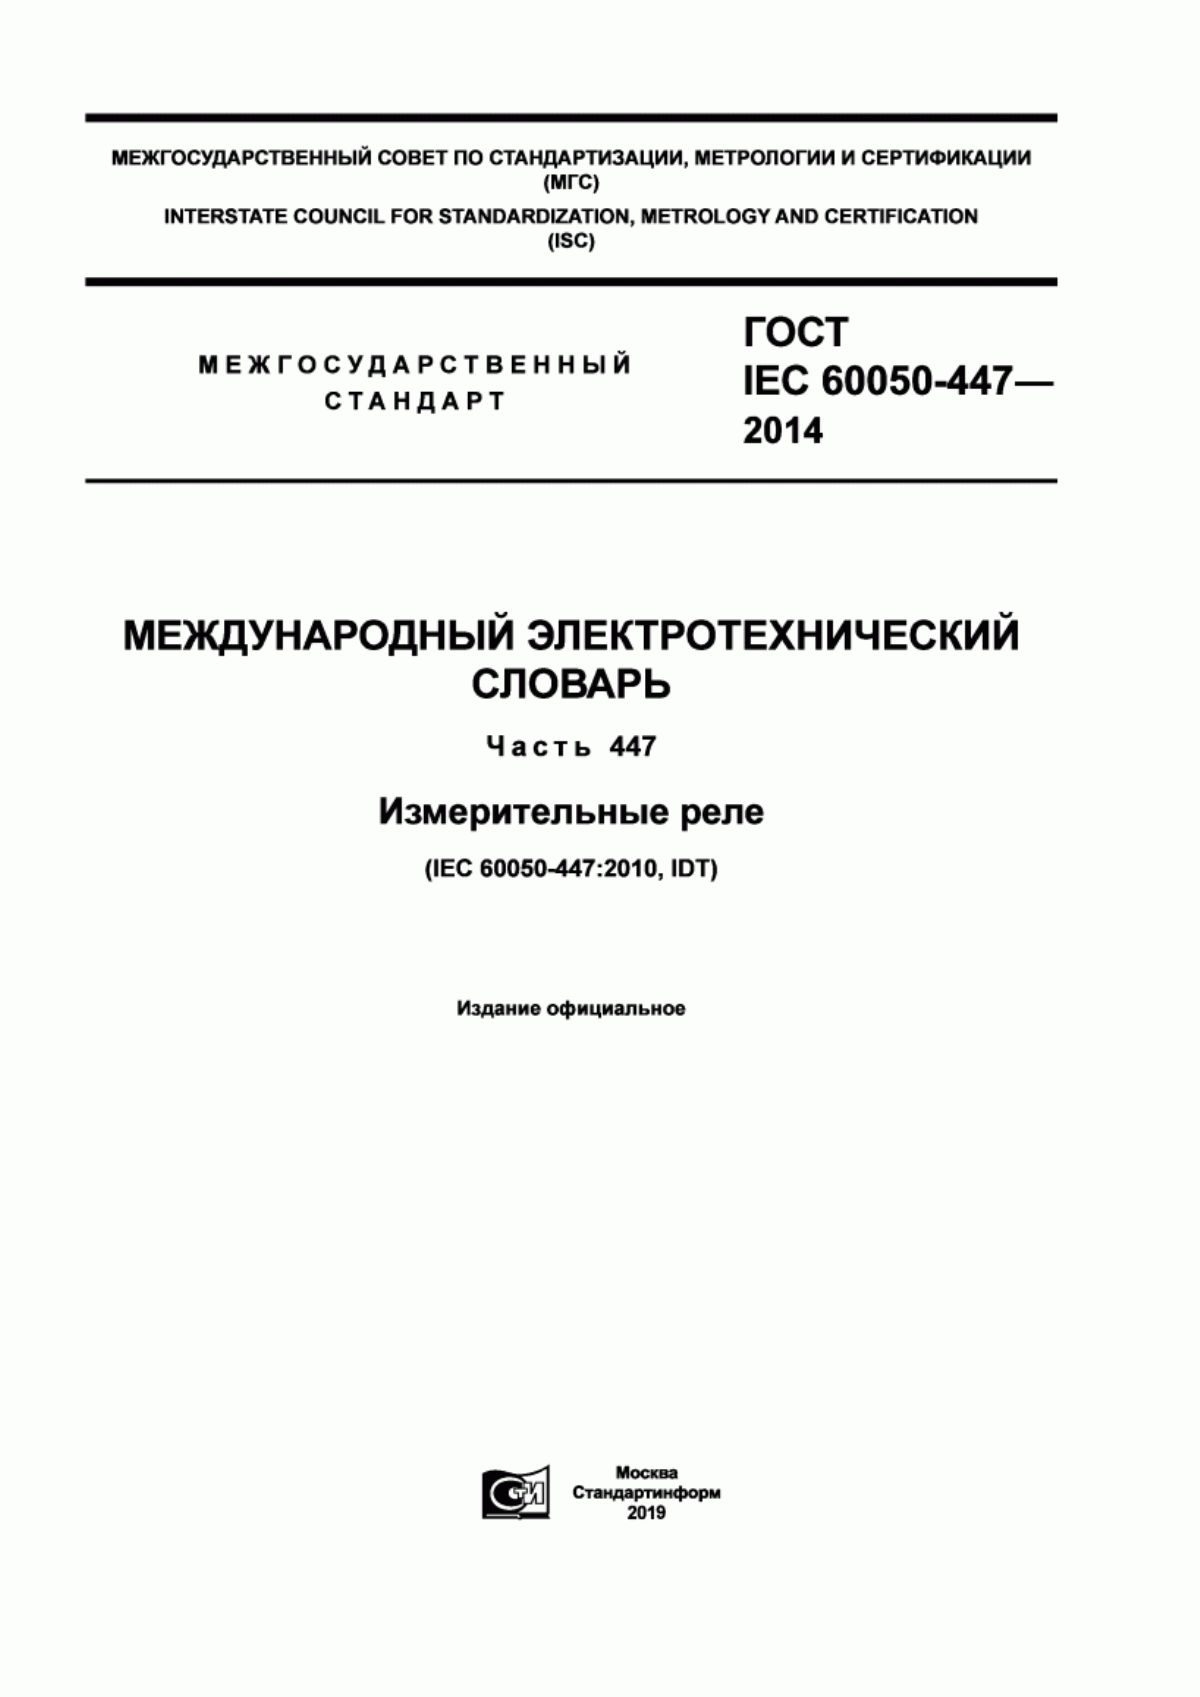 ГОСТ IEC 60050-447-2014 Международный электротехнический словарь. Часть 447. Измерительные реле